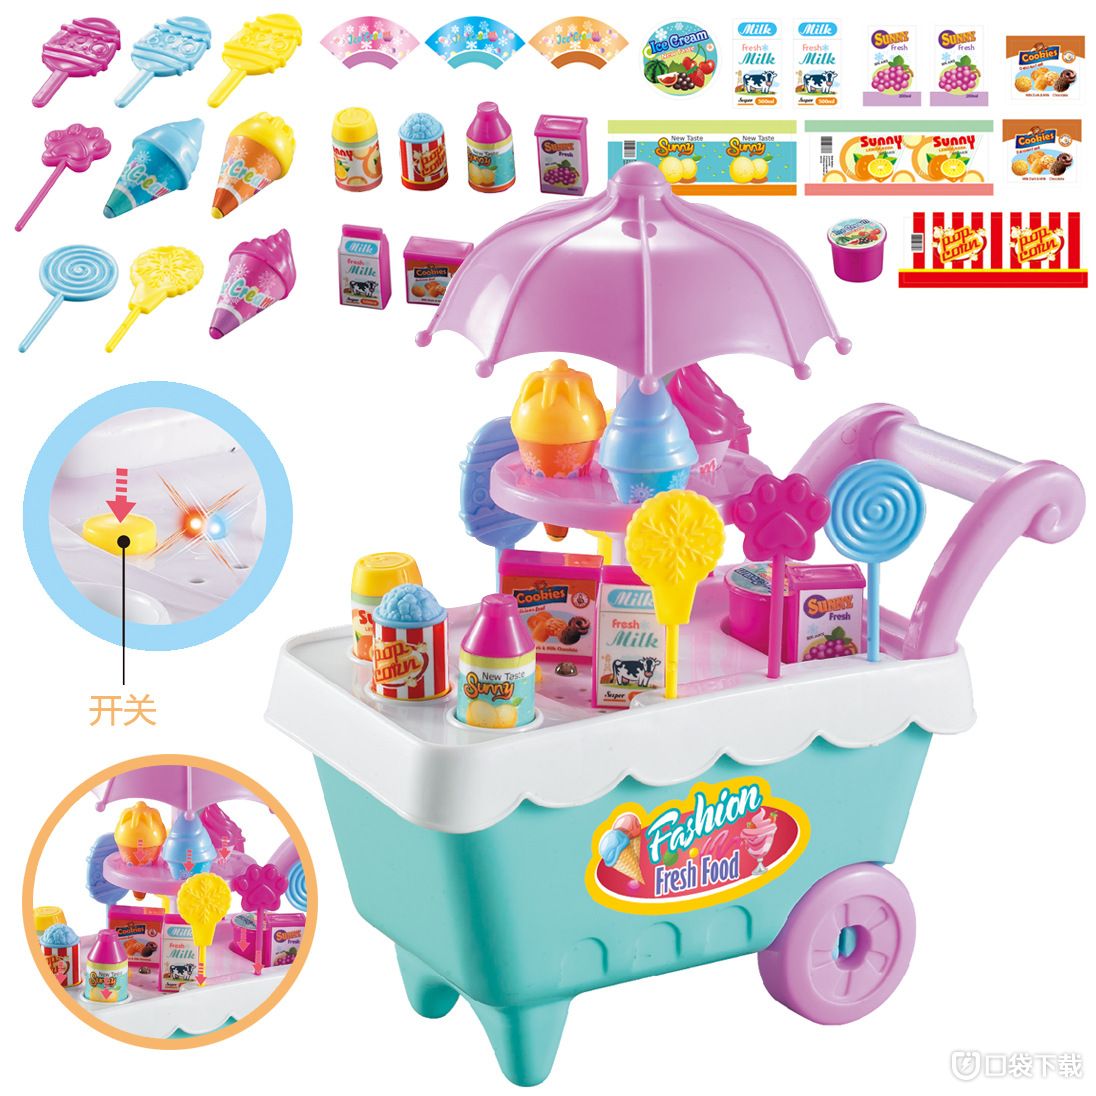 冰淇淋车玩具收纳方法:教你如何整理冰淇淋车玩具